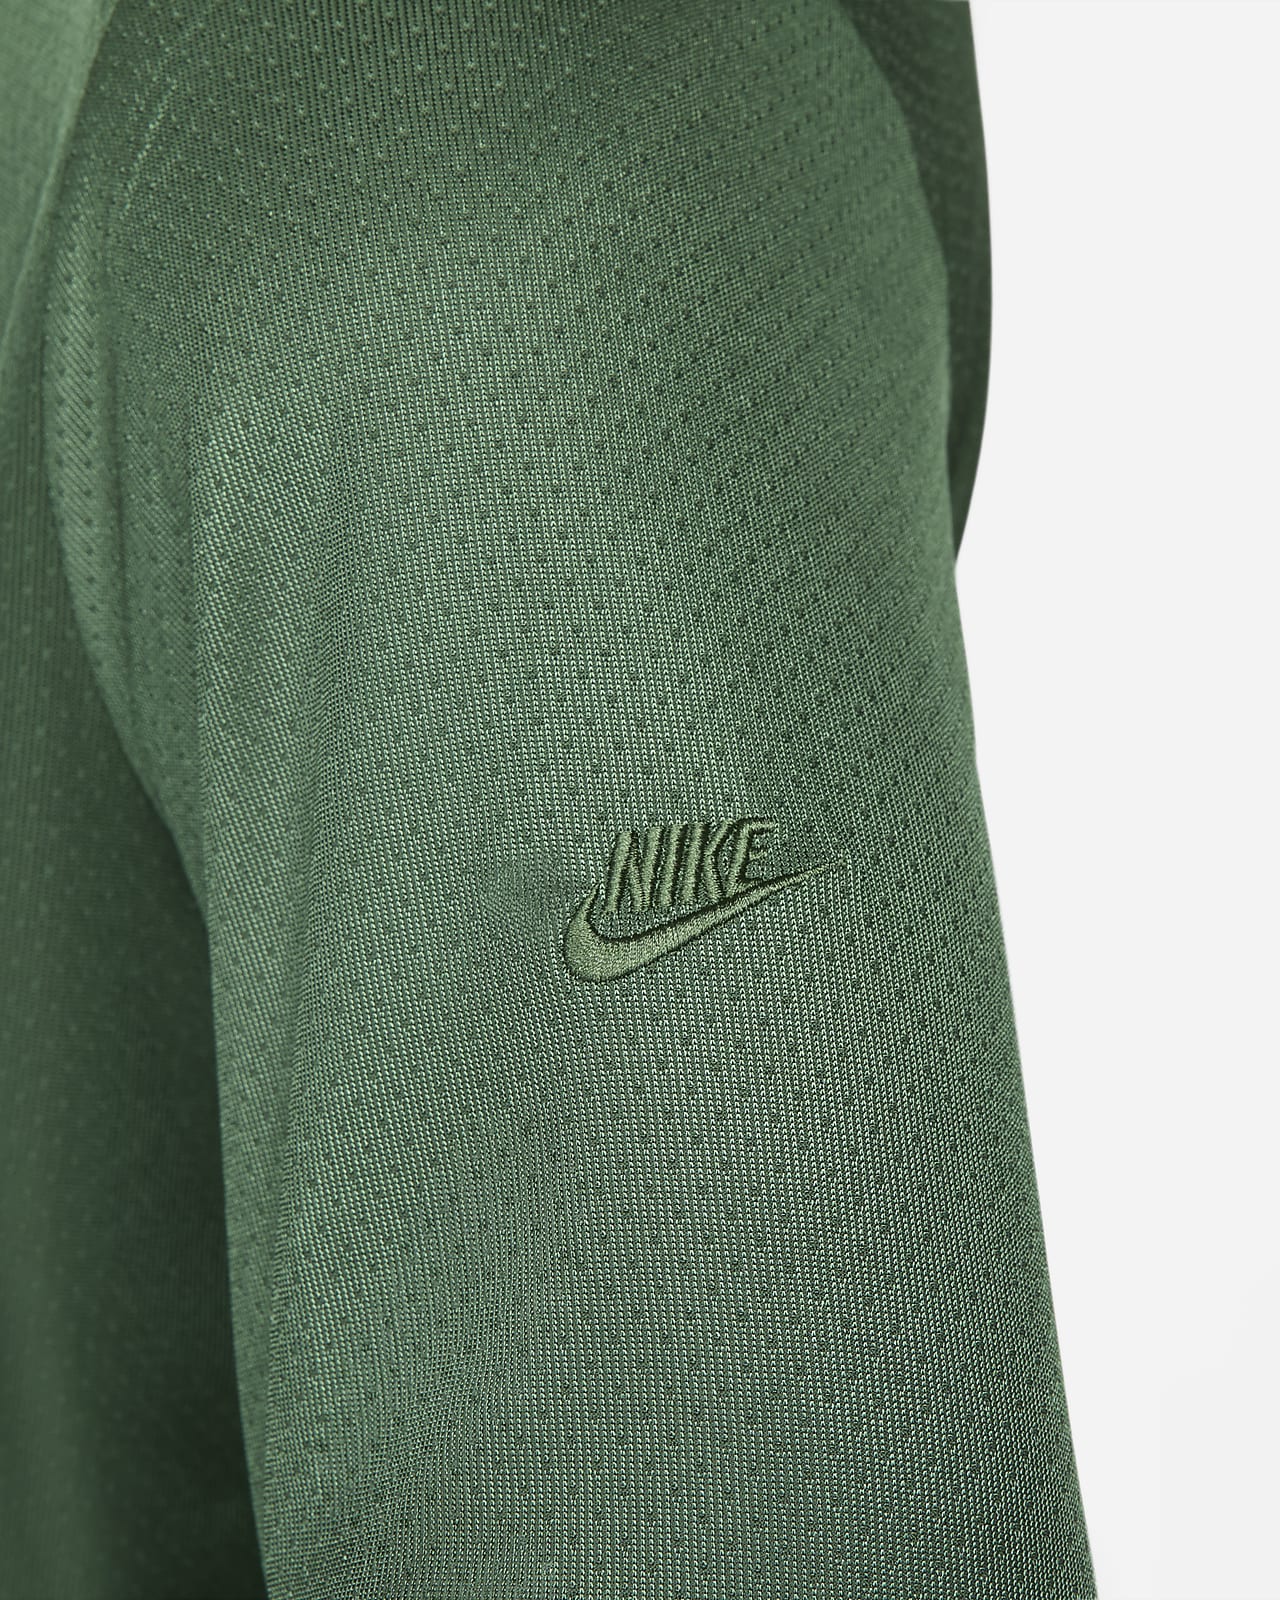 Haut à manches longues et demi-zip Dri-FIT Nike Sportswear Tech